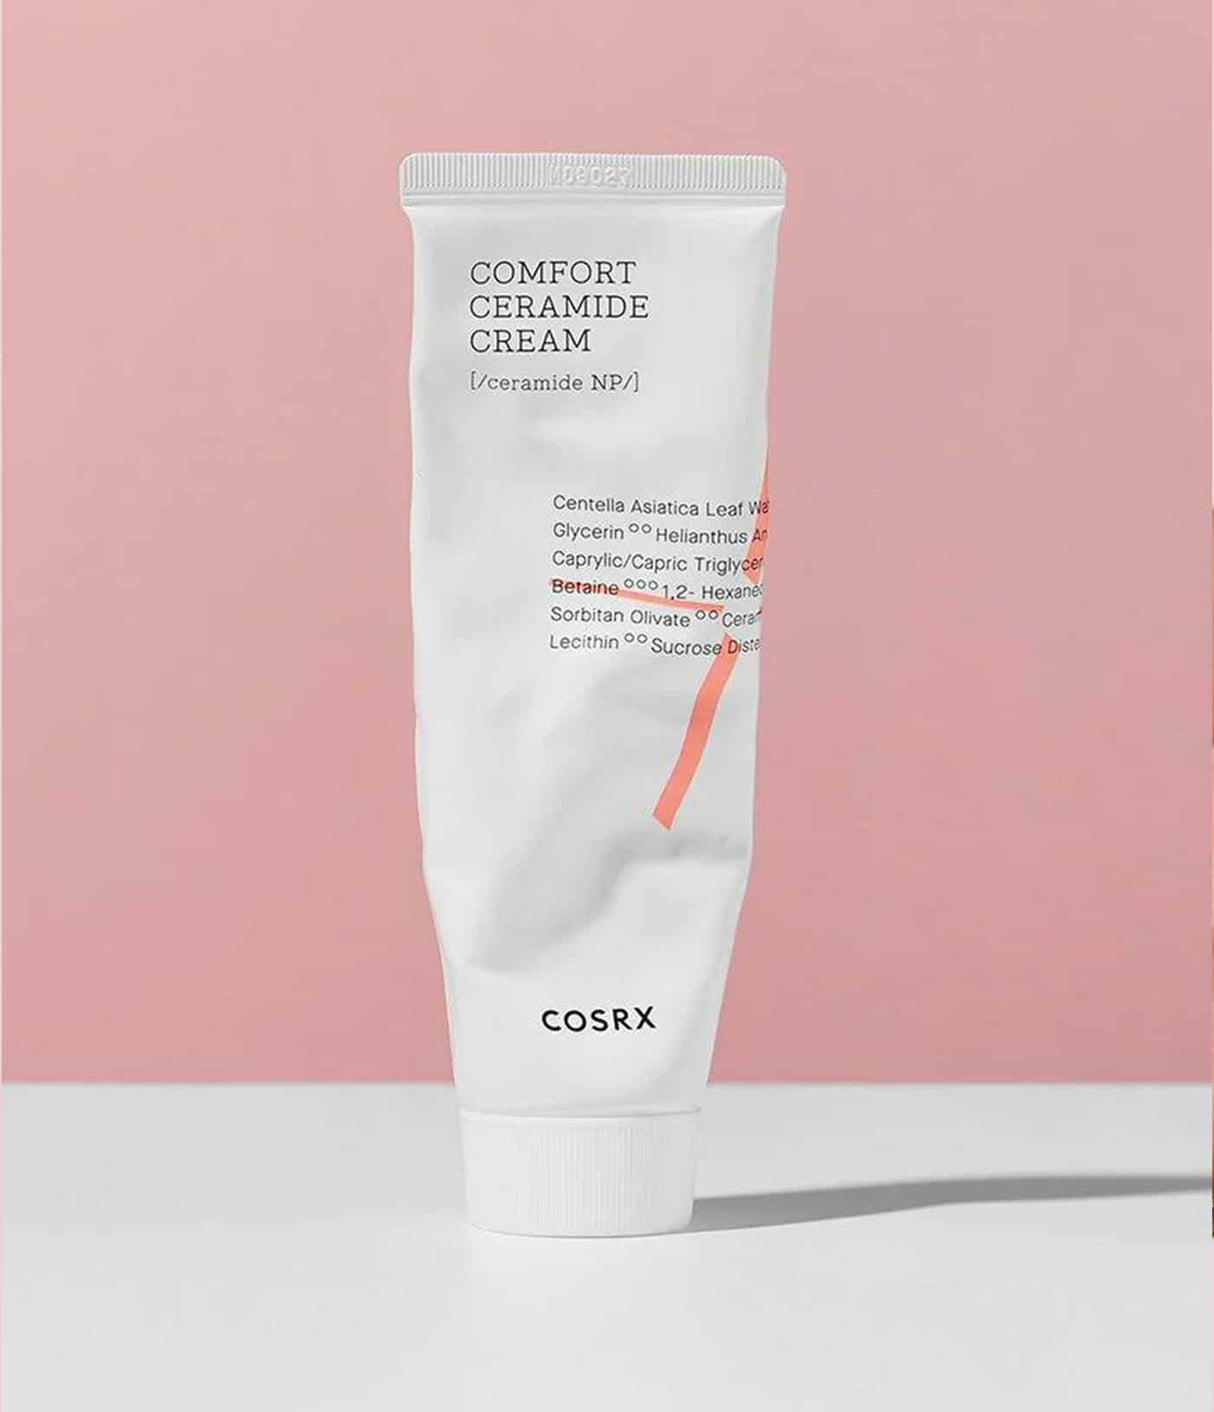 Comfort Ceramide Cream de COSRX